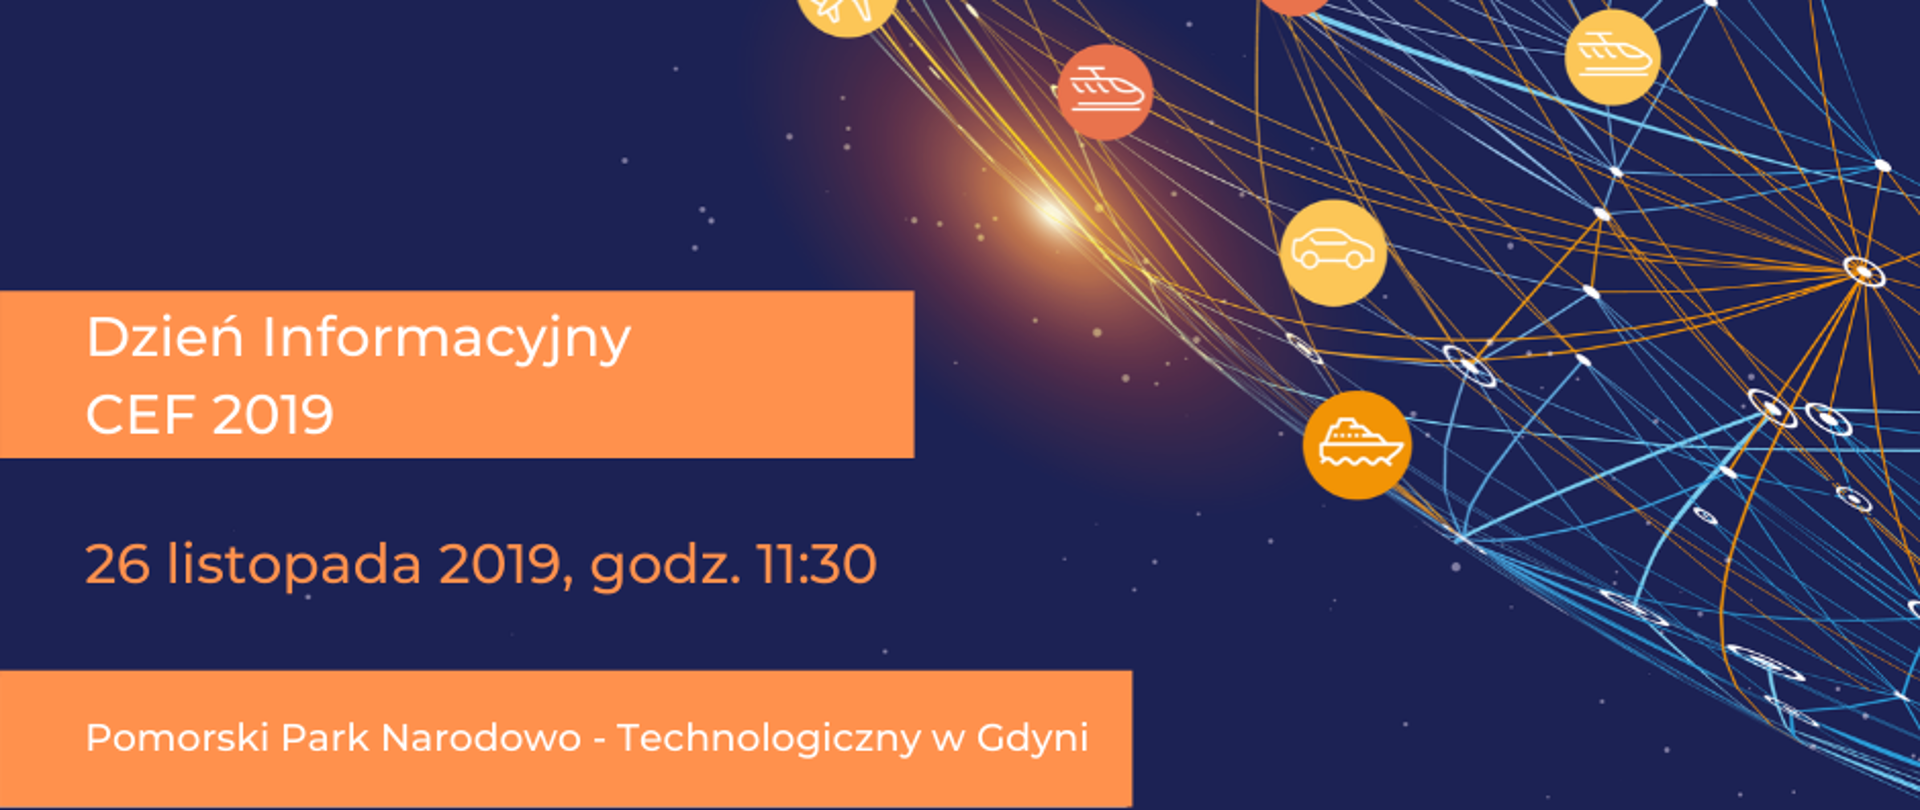 Grafika z napisem "Dzień Informacyjny CEF 2019, 26 listopada 2019 r. godz. 11:30, Pomorski Park Naukowo-Technologiczny w Gdyni"